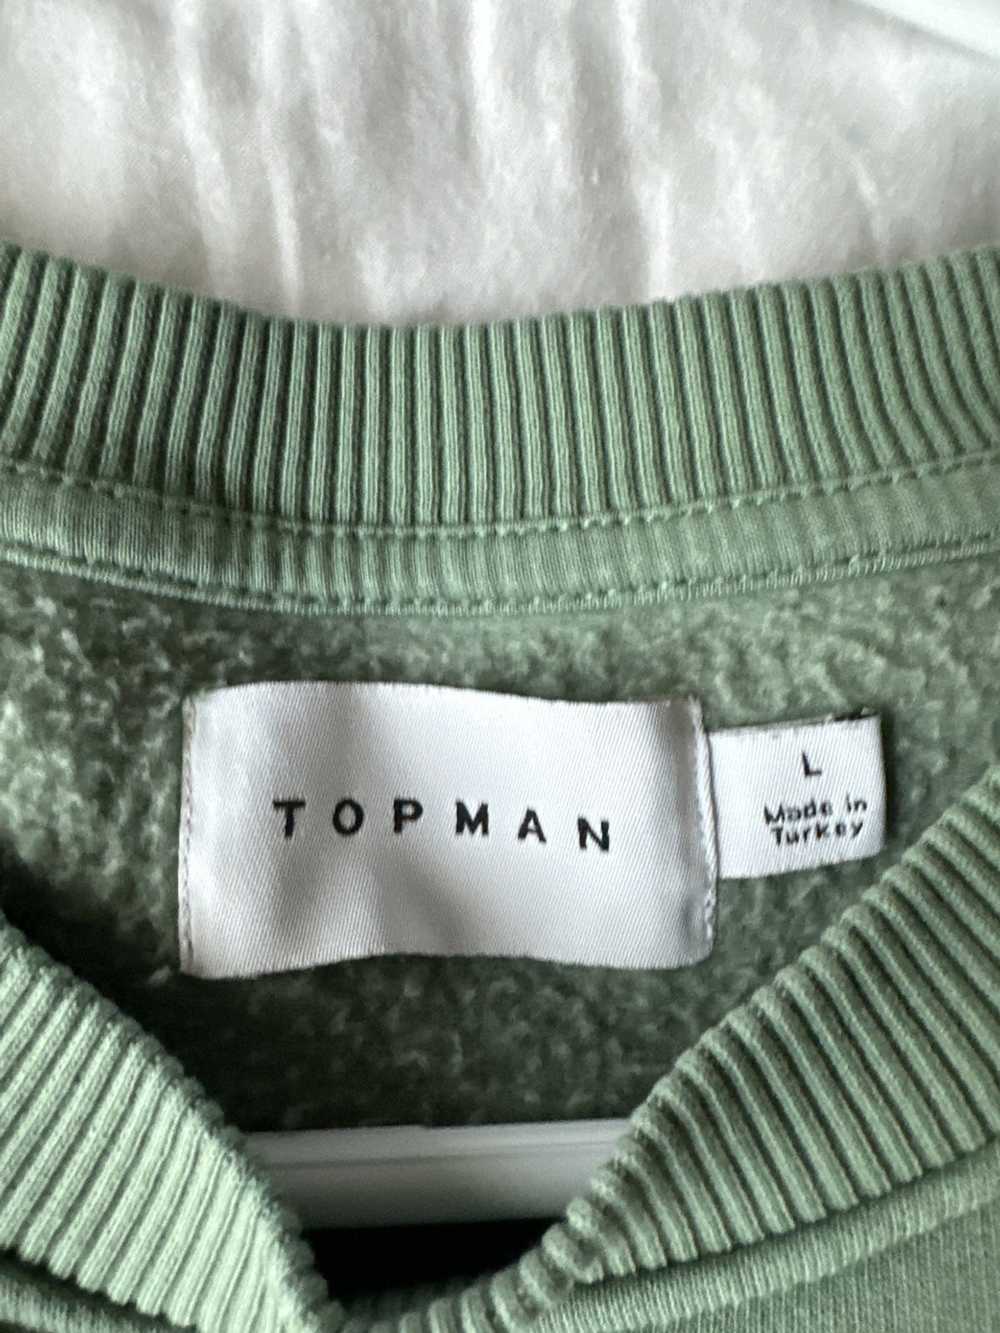 Topman Top man shirt - image 3